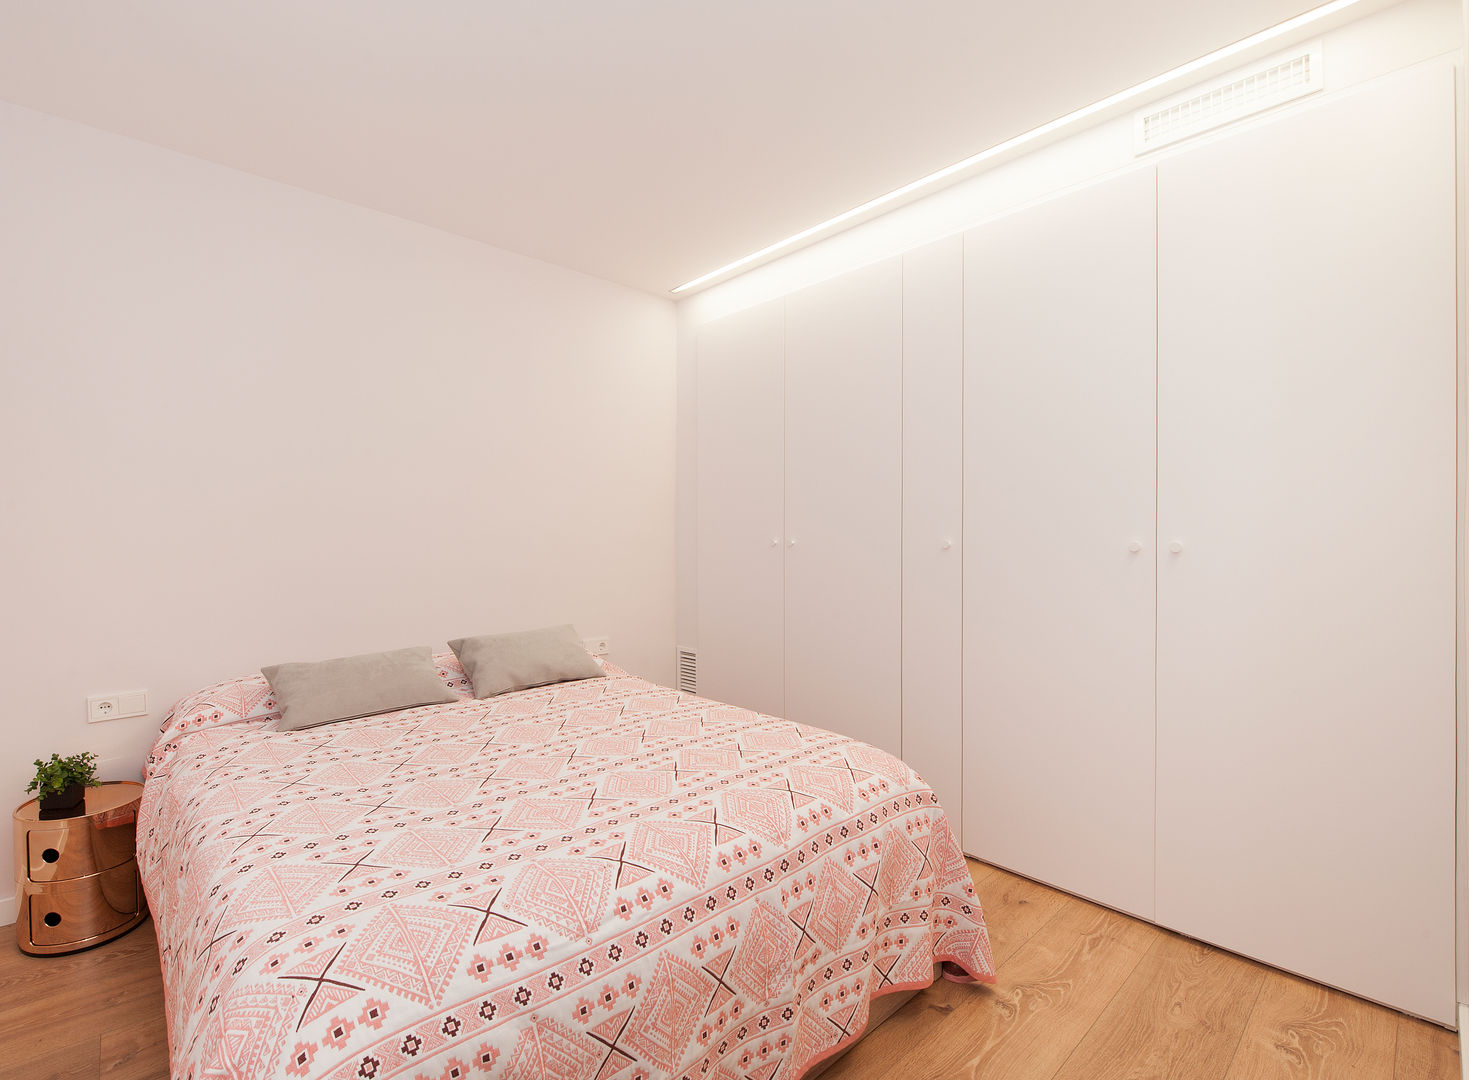 Restaurar la Armonía y el Equilibrio con el Feng Shui en este Apartamento en Barcelona, Cristina Jové Cristina Jové ห้องนอน เตียงนอนและหัวเตียง